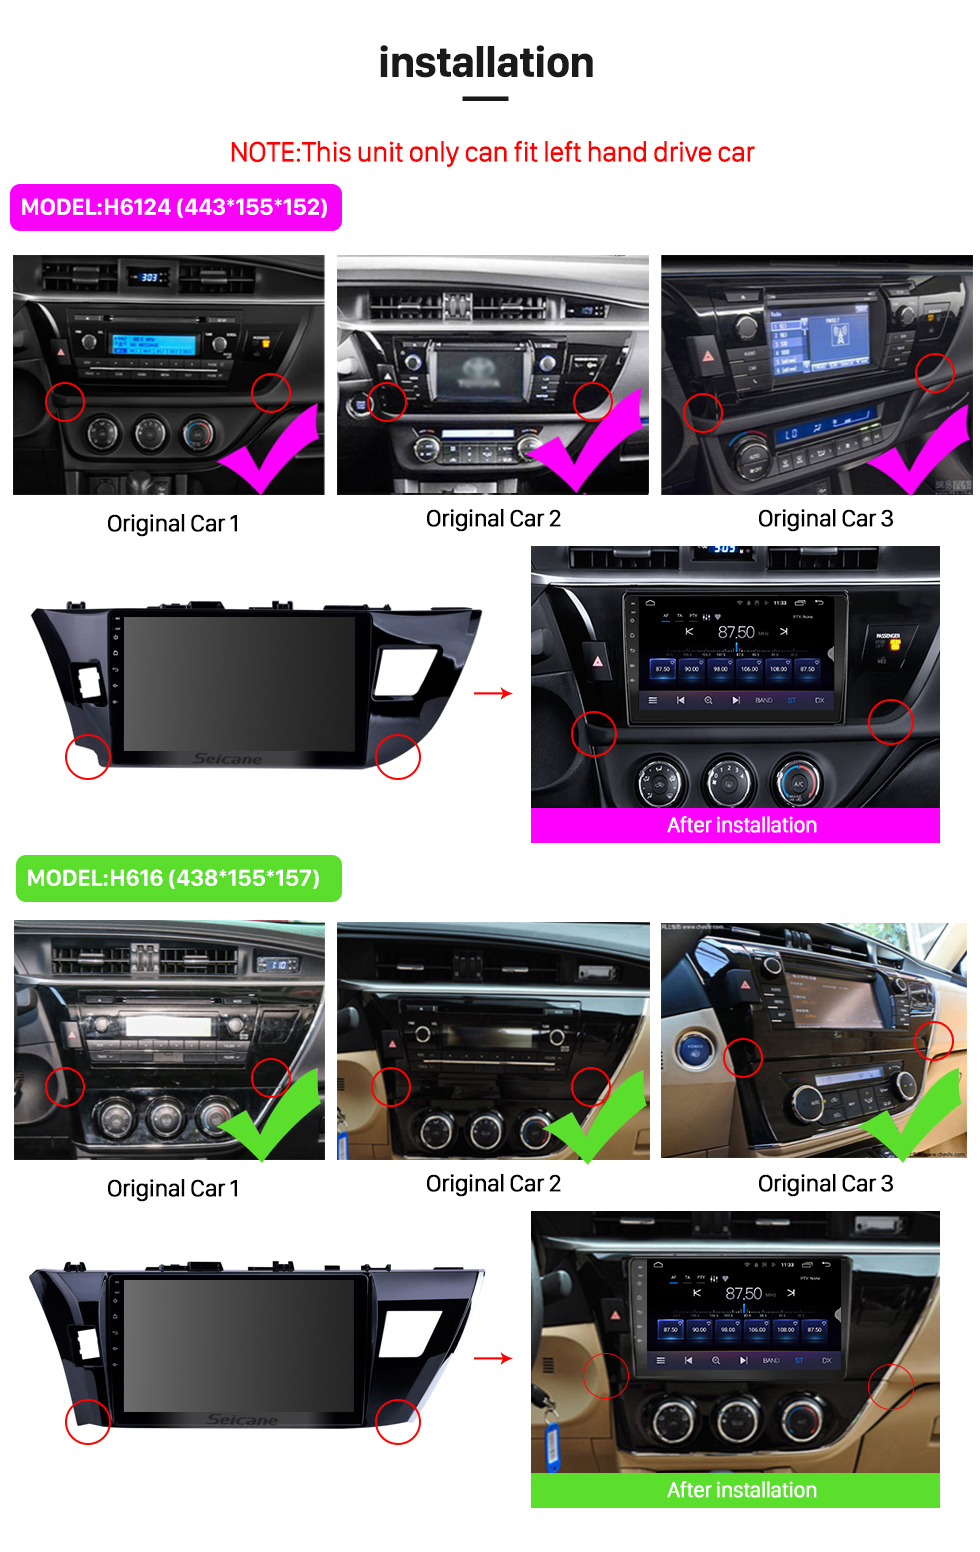 Seicane 10.1 pulgadas Android 13.0 Pantalla táctil radio Bluetooth Sistema de navegación GPS para Toyota Corolla 11 2012-2014 2015 2016 E170 E180 Soporte TPMS DVR OBD II USB SD WiFi Cámara trasera Control del volante HD 1080P Video AUX